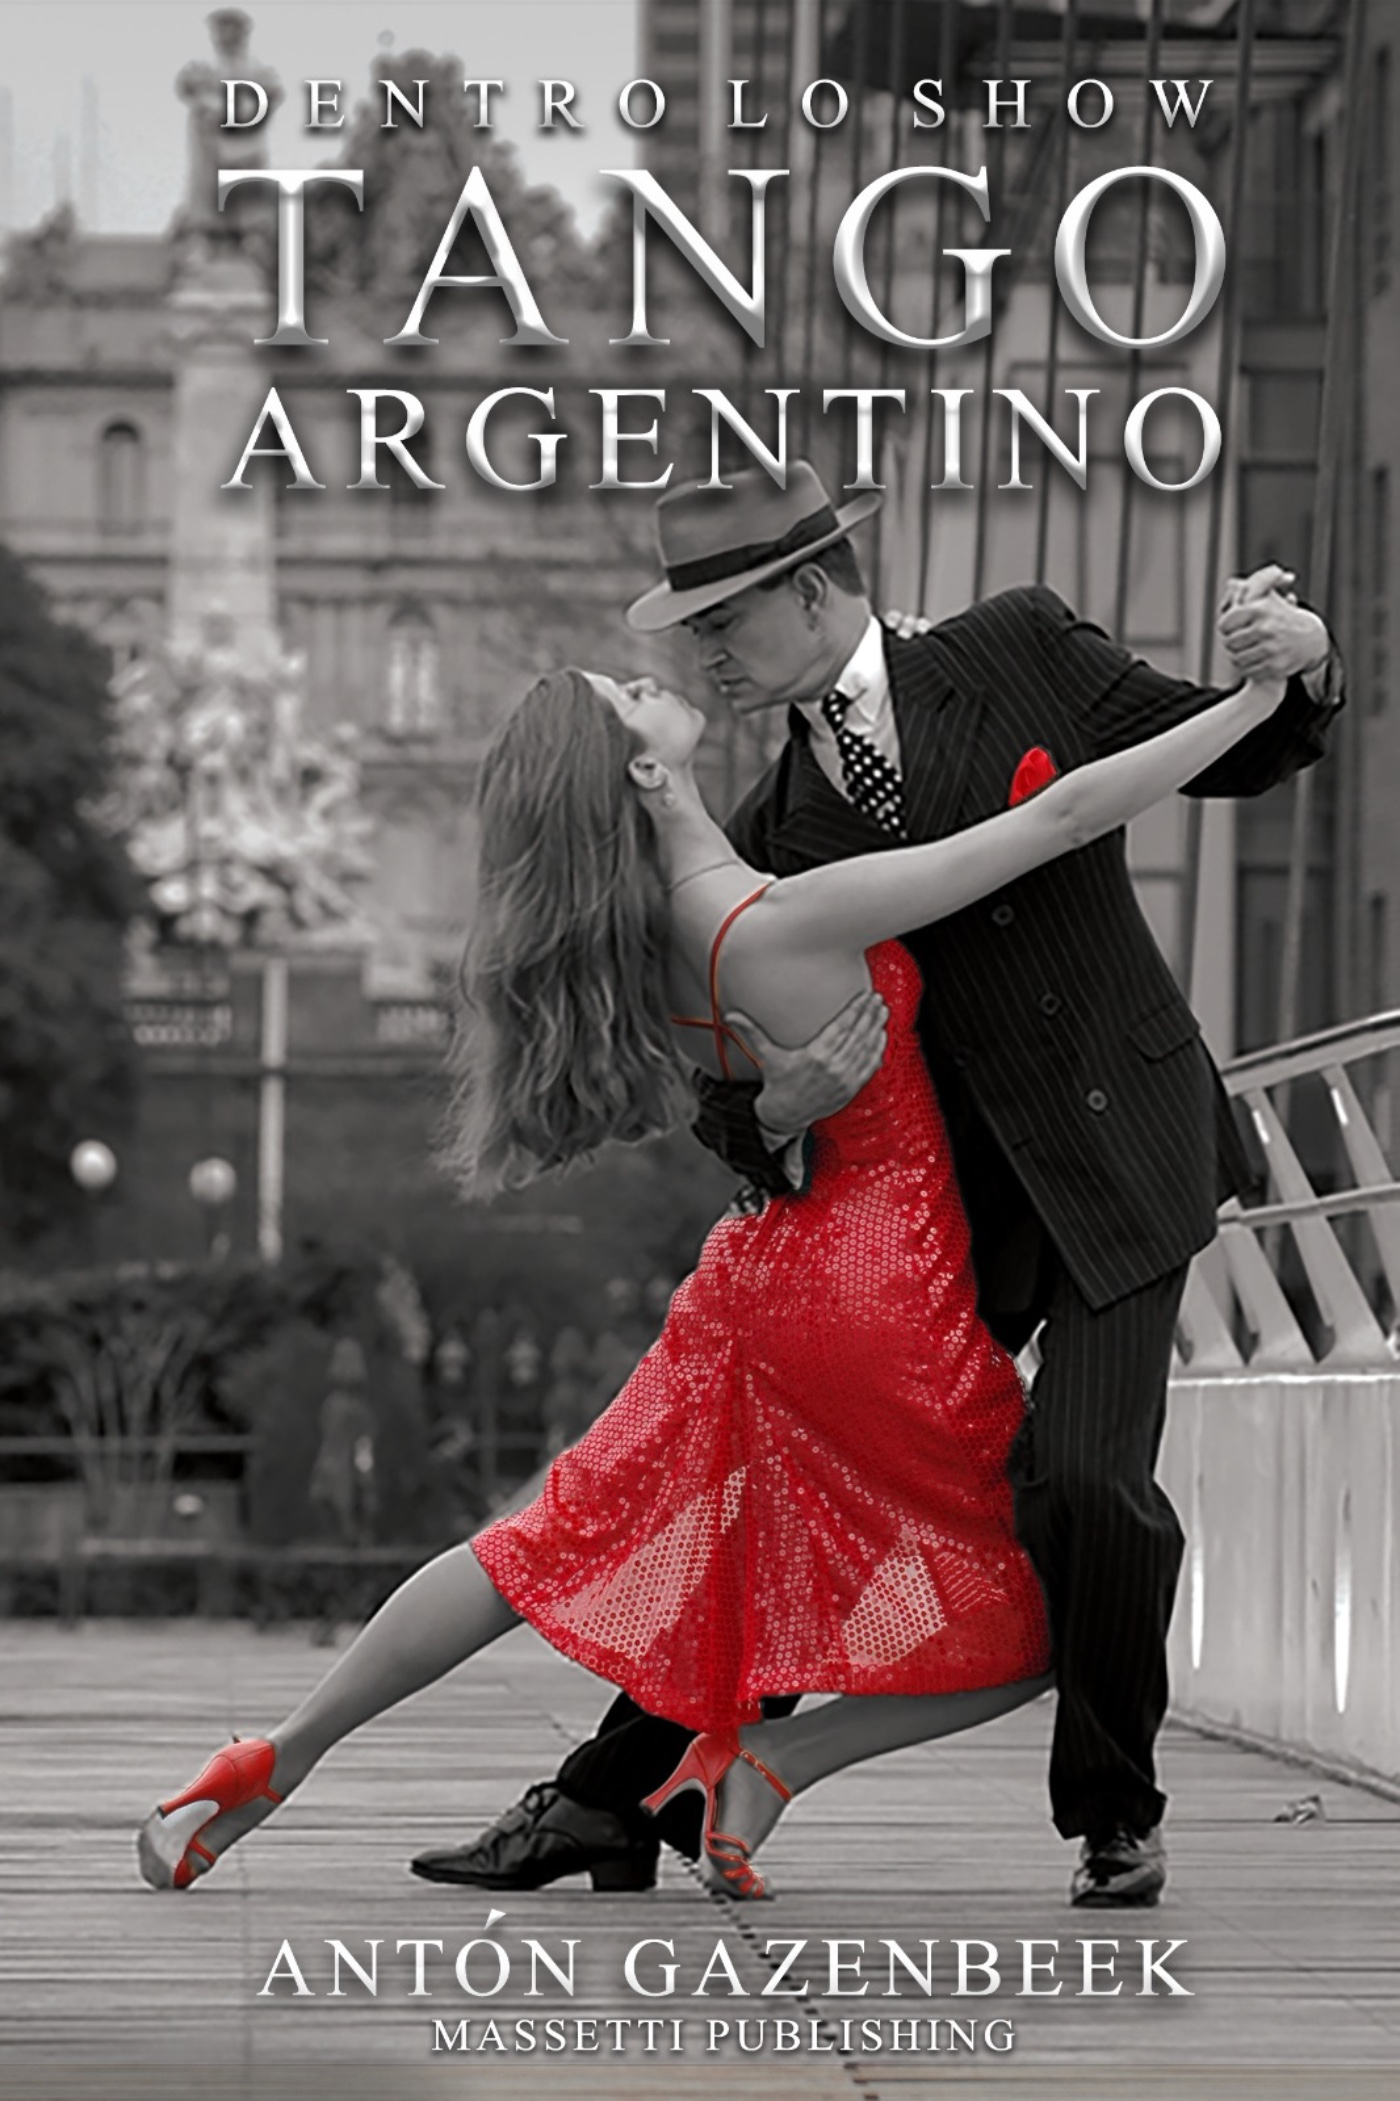 Dentro lo Show Tango Argentino